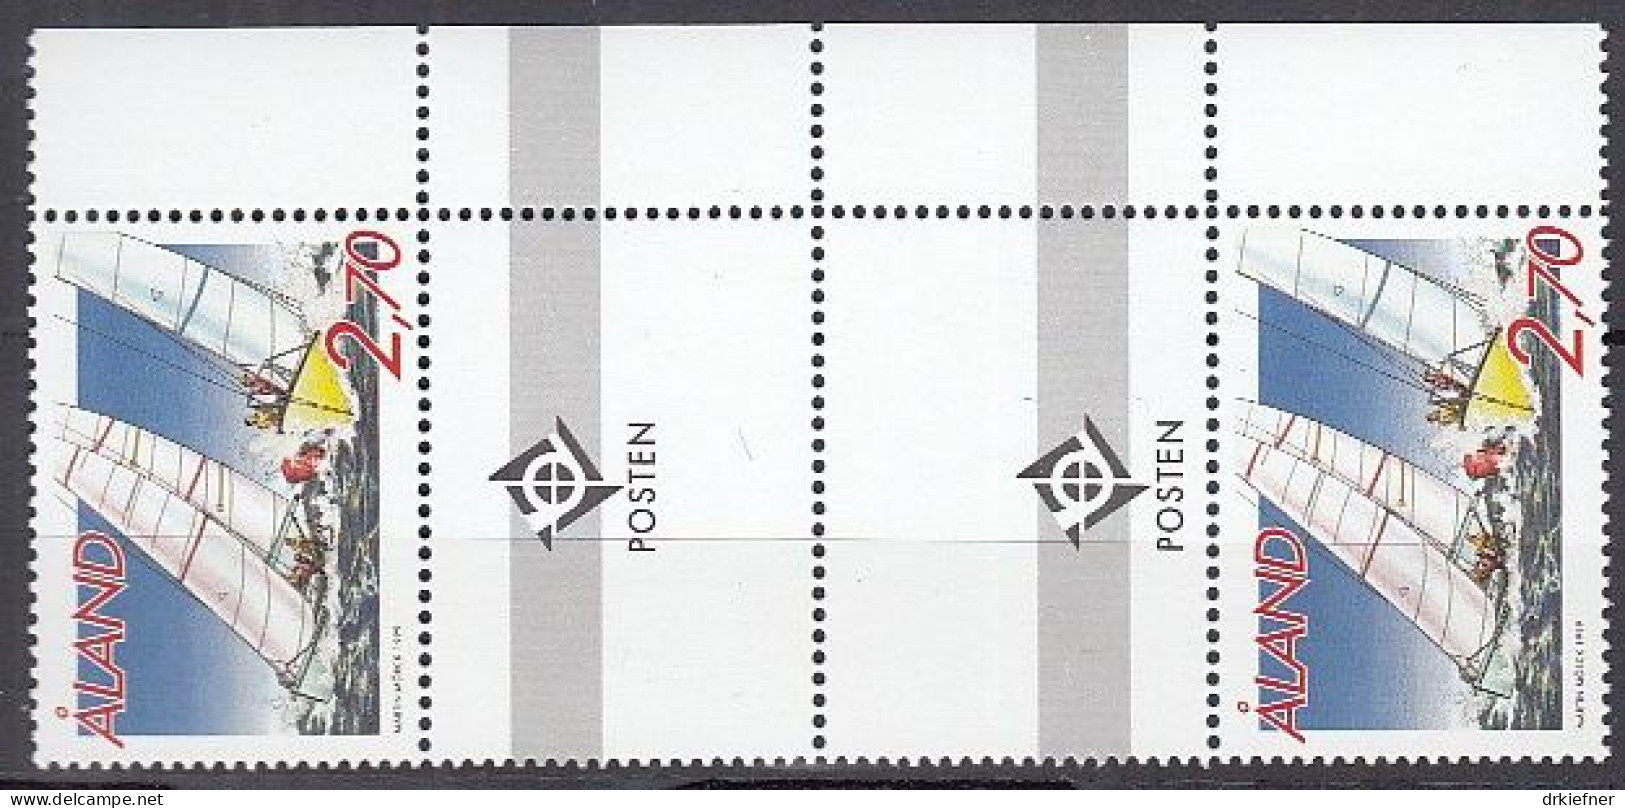 ALAND  158, Mit Doppel-Zierfeld, Postfrisch **, Segelsport, 1999 - Aland